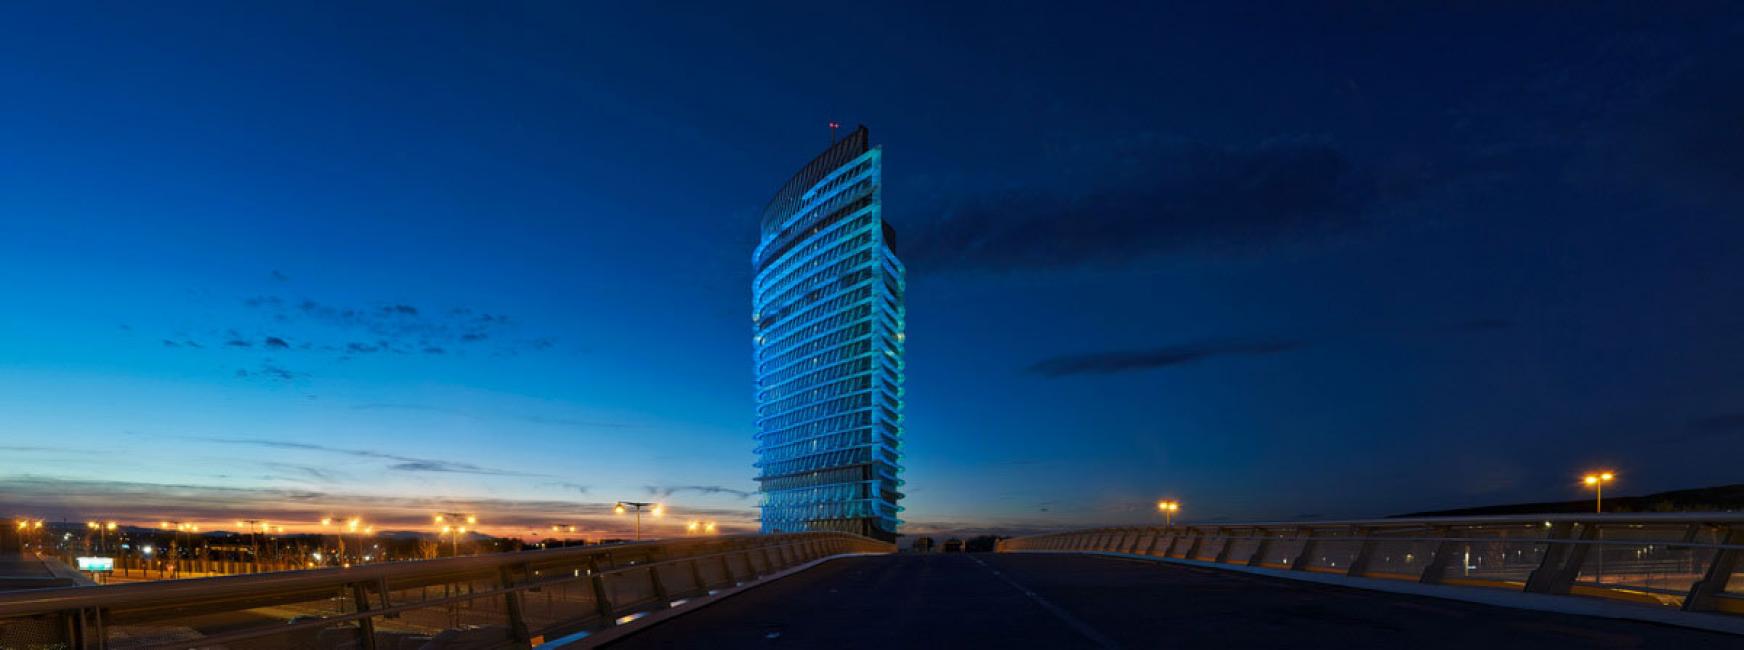 Fotografía de Hugo Rodriguez para Nthephoto. Torre del agua, Zaragoza. Esta es una panorámica construida con 5 fotos verticales.